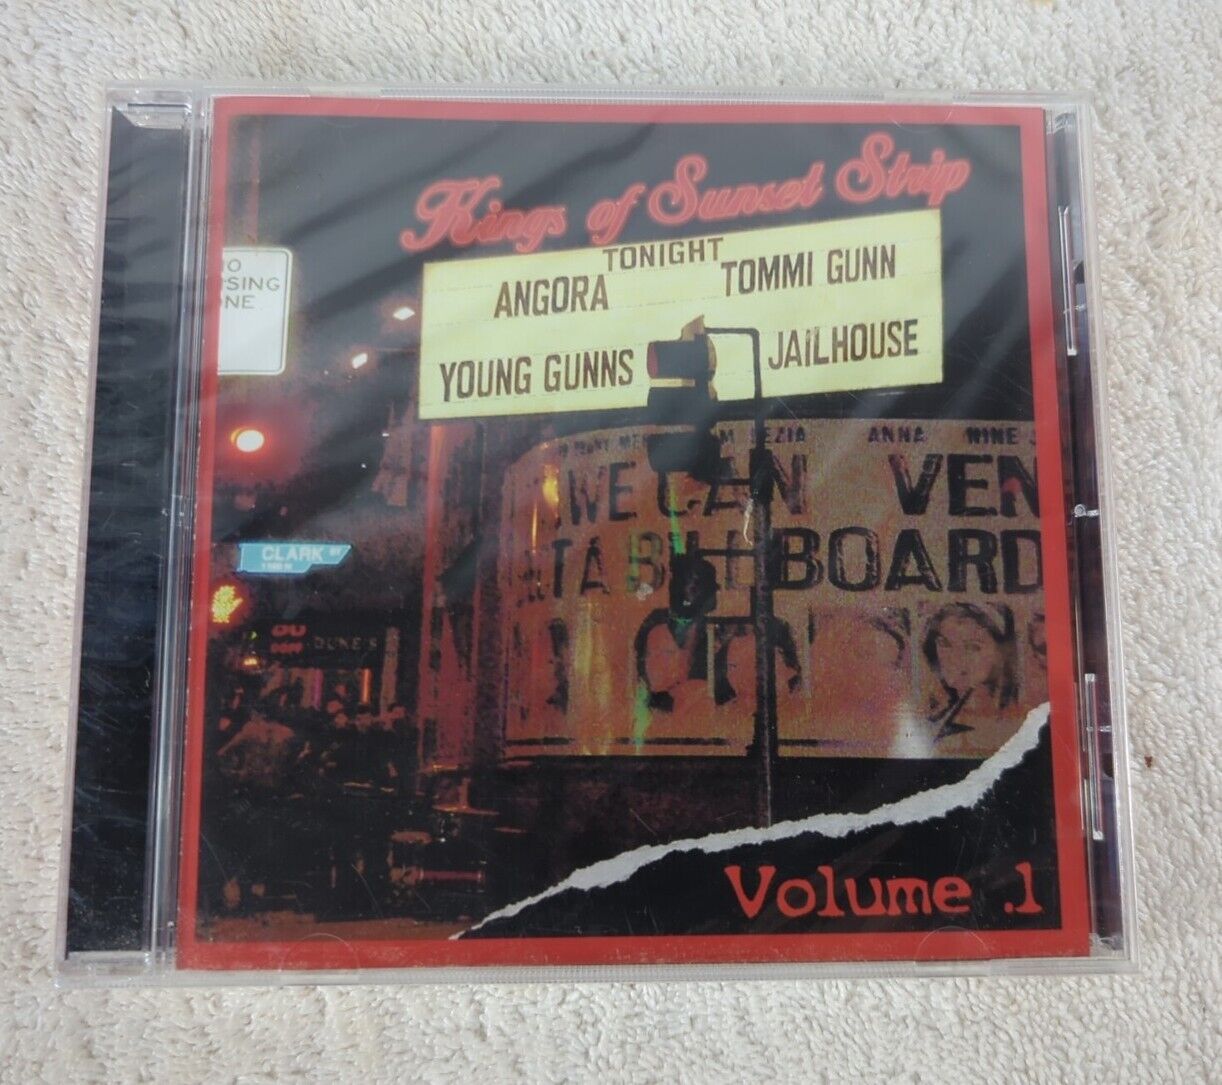 Kings of Sunset Strip CD - Angora, Young Gunns Wildside, Tommi Gunn, Jailhouse